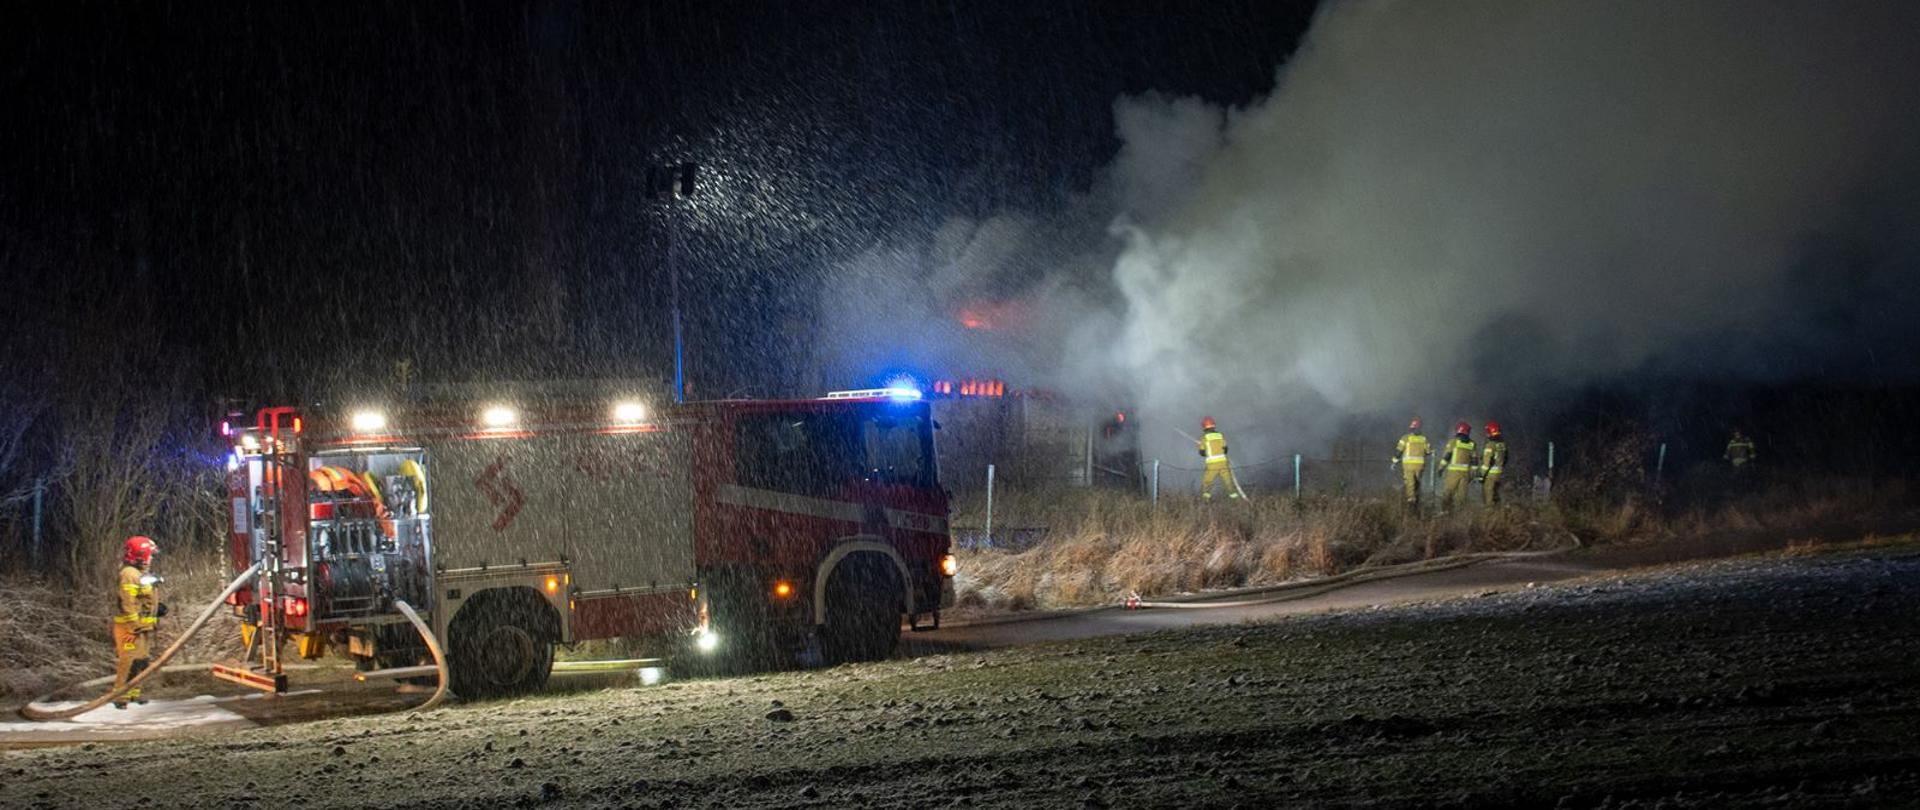 Na zdjęciu widoczny samochód pożarniczy oraz strażaków gaszących pożar balotów słomy w warunkach zimowych